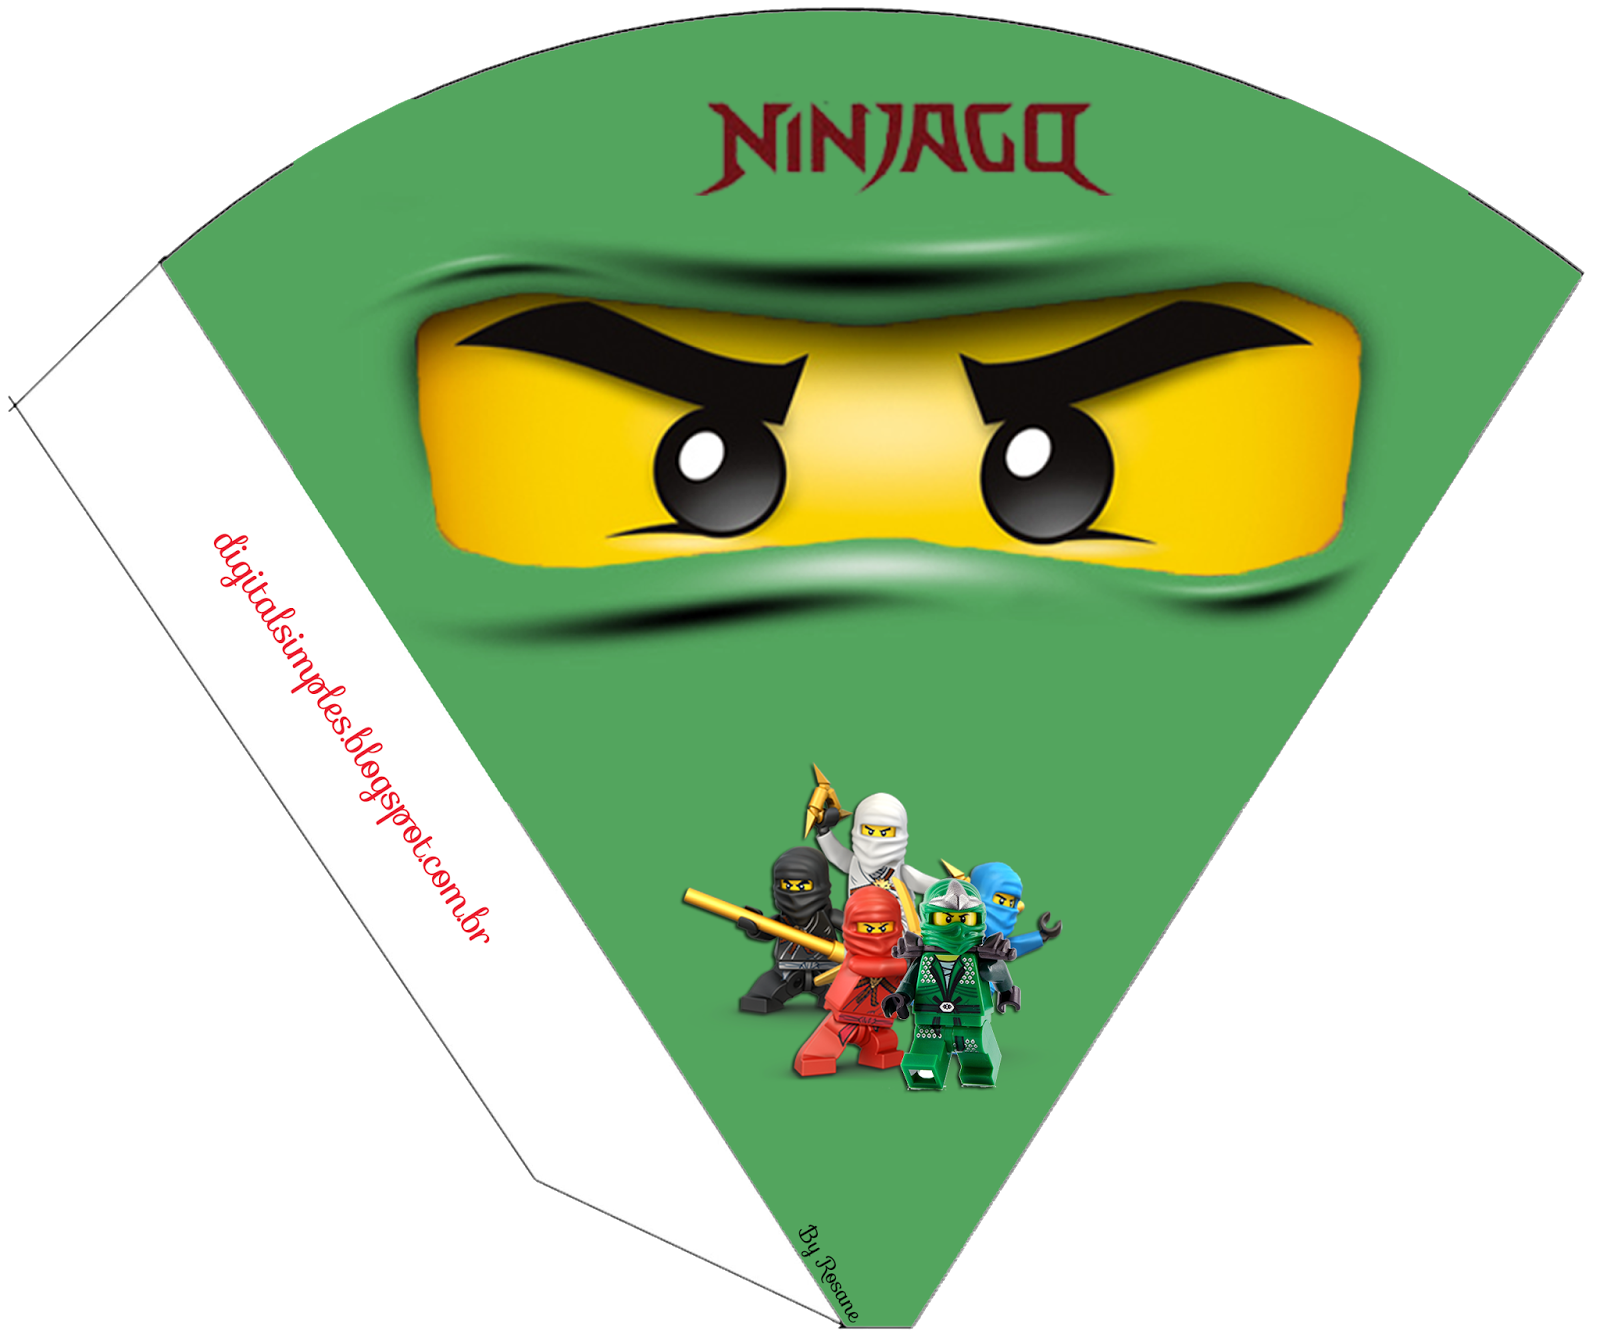 ninja clipart printable